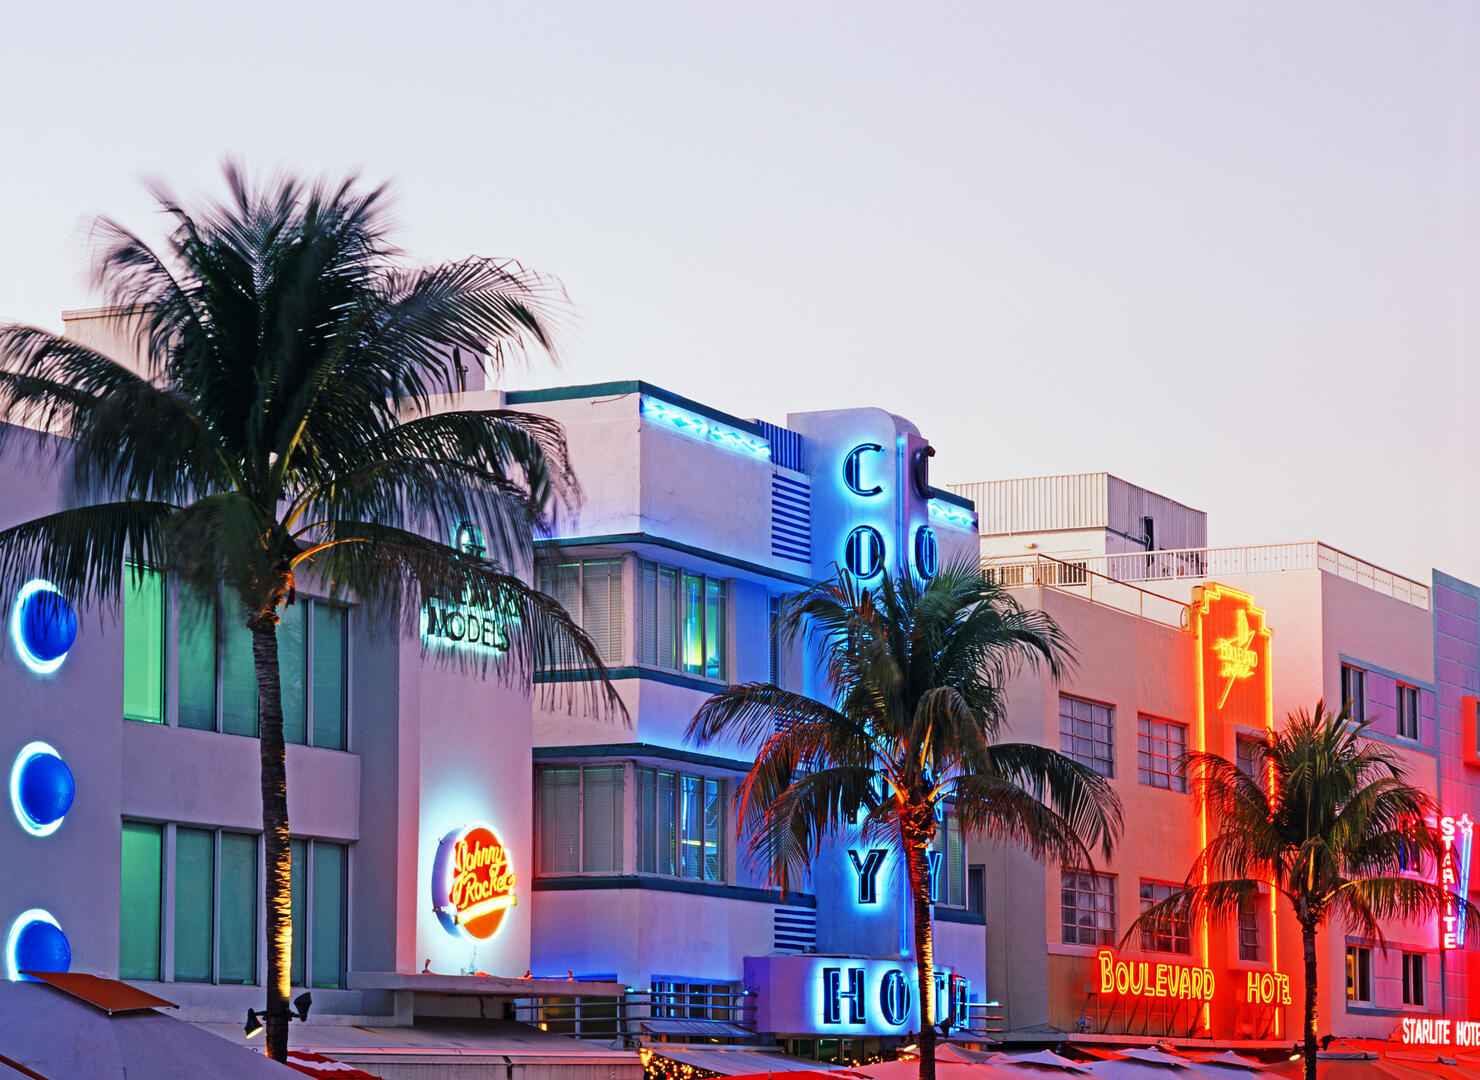 Art Deco buildings on Ocean Drive